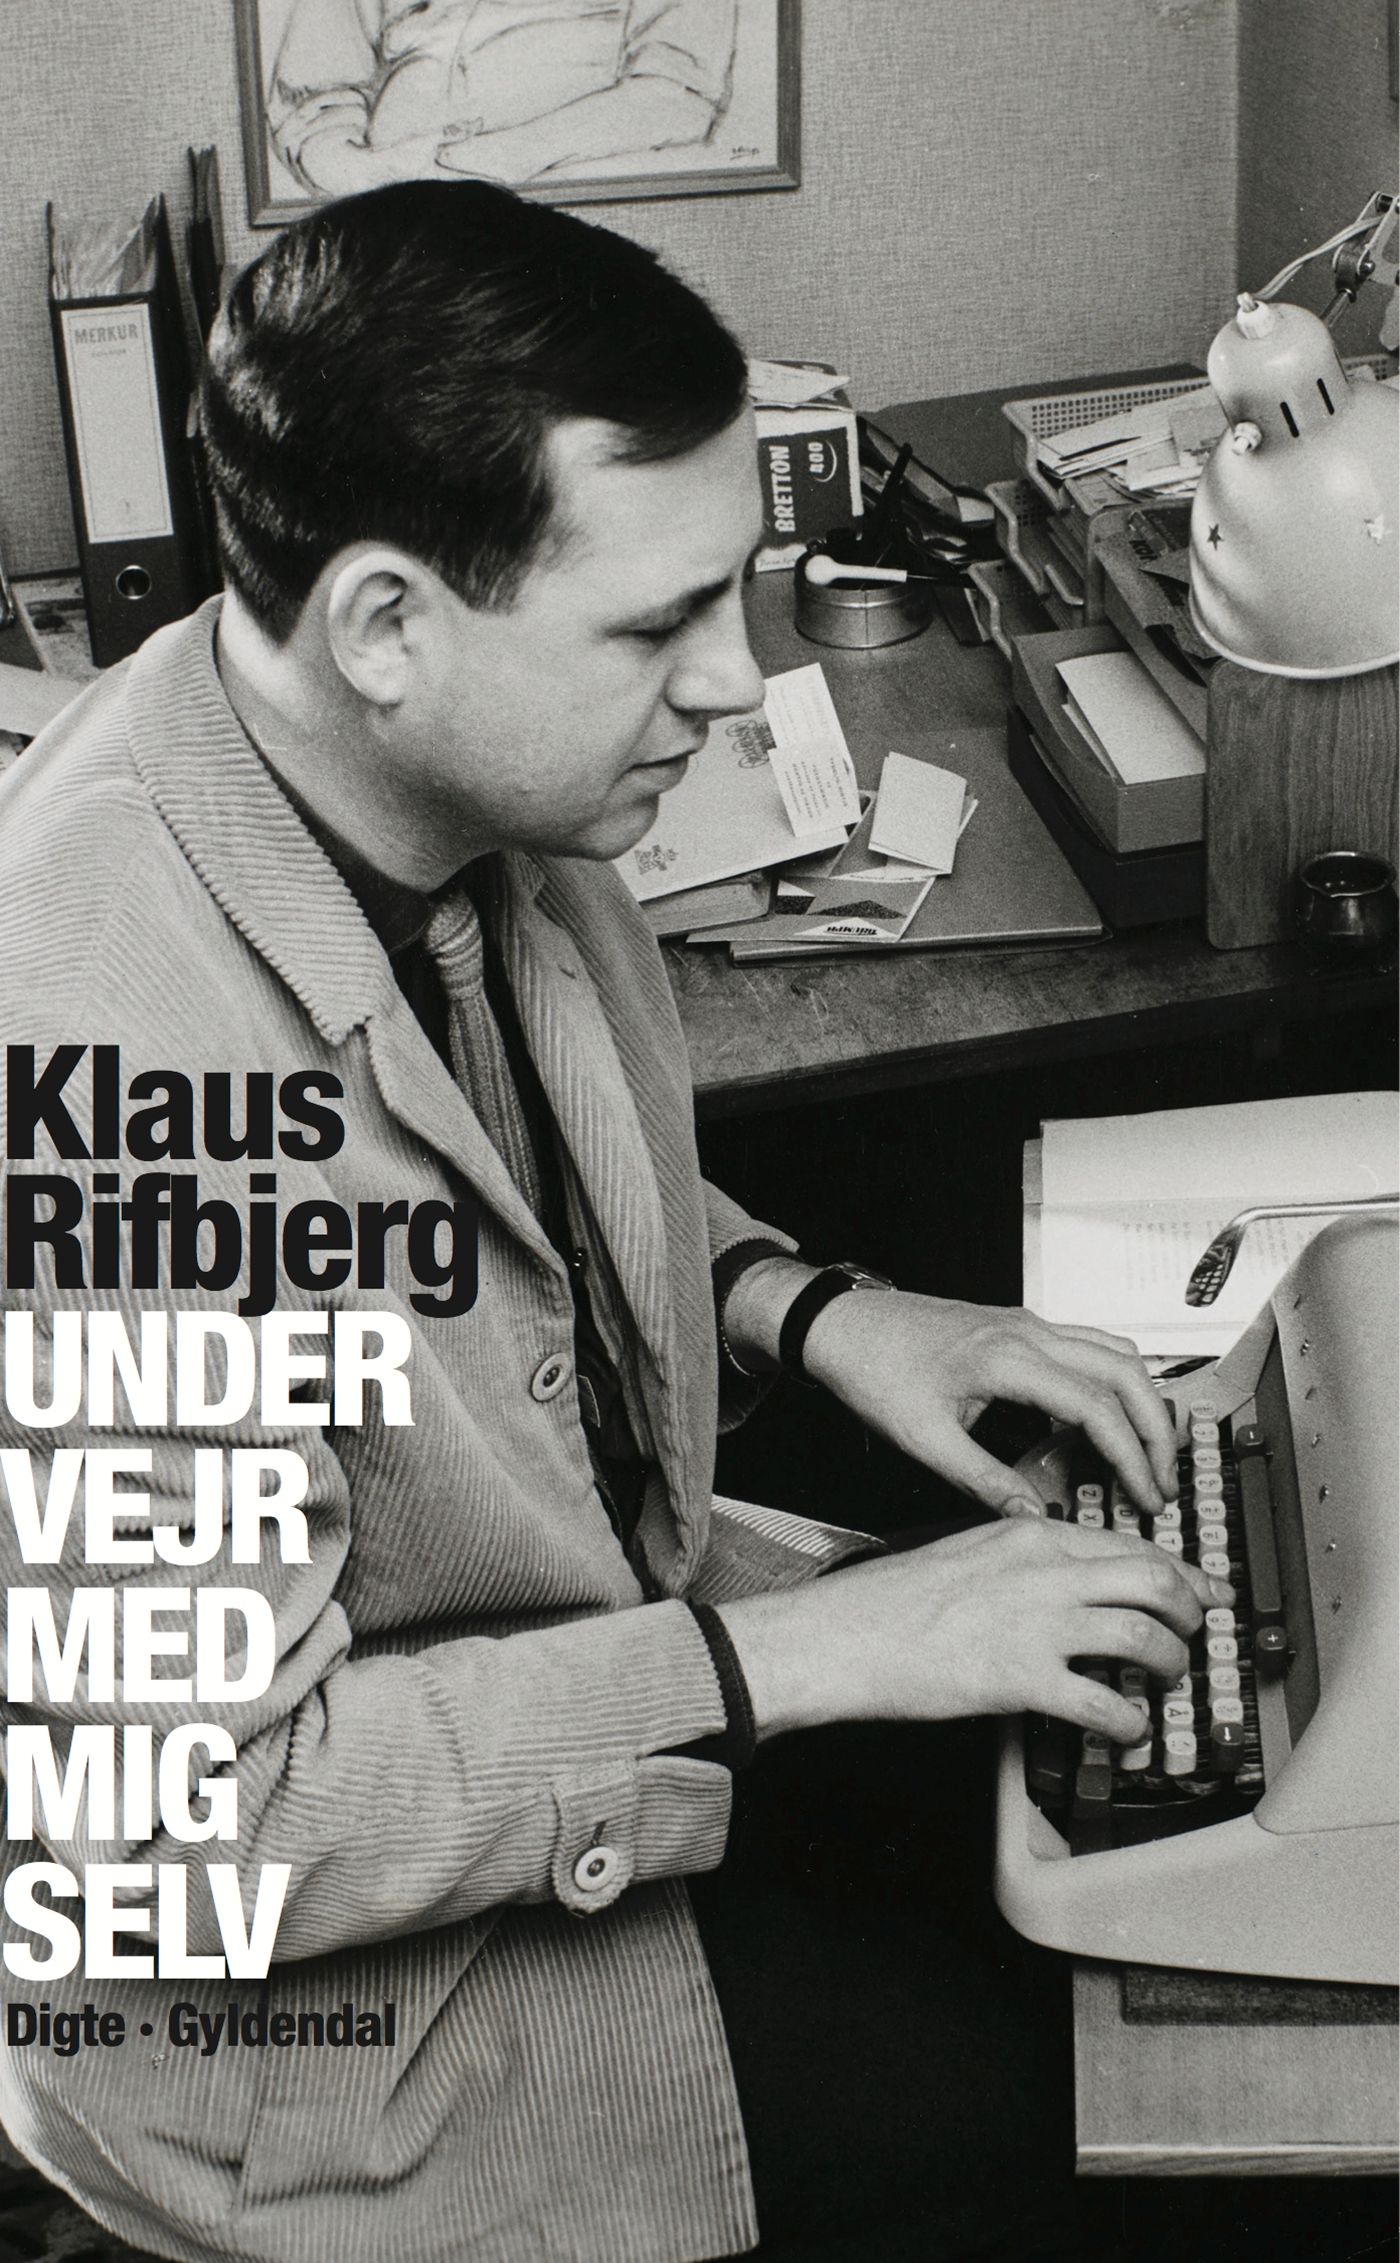 Under vejr med mig selv, e-bok av Klaus Rifbjerg